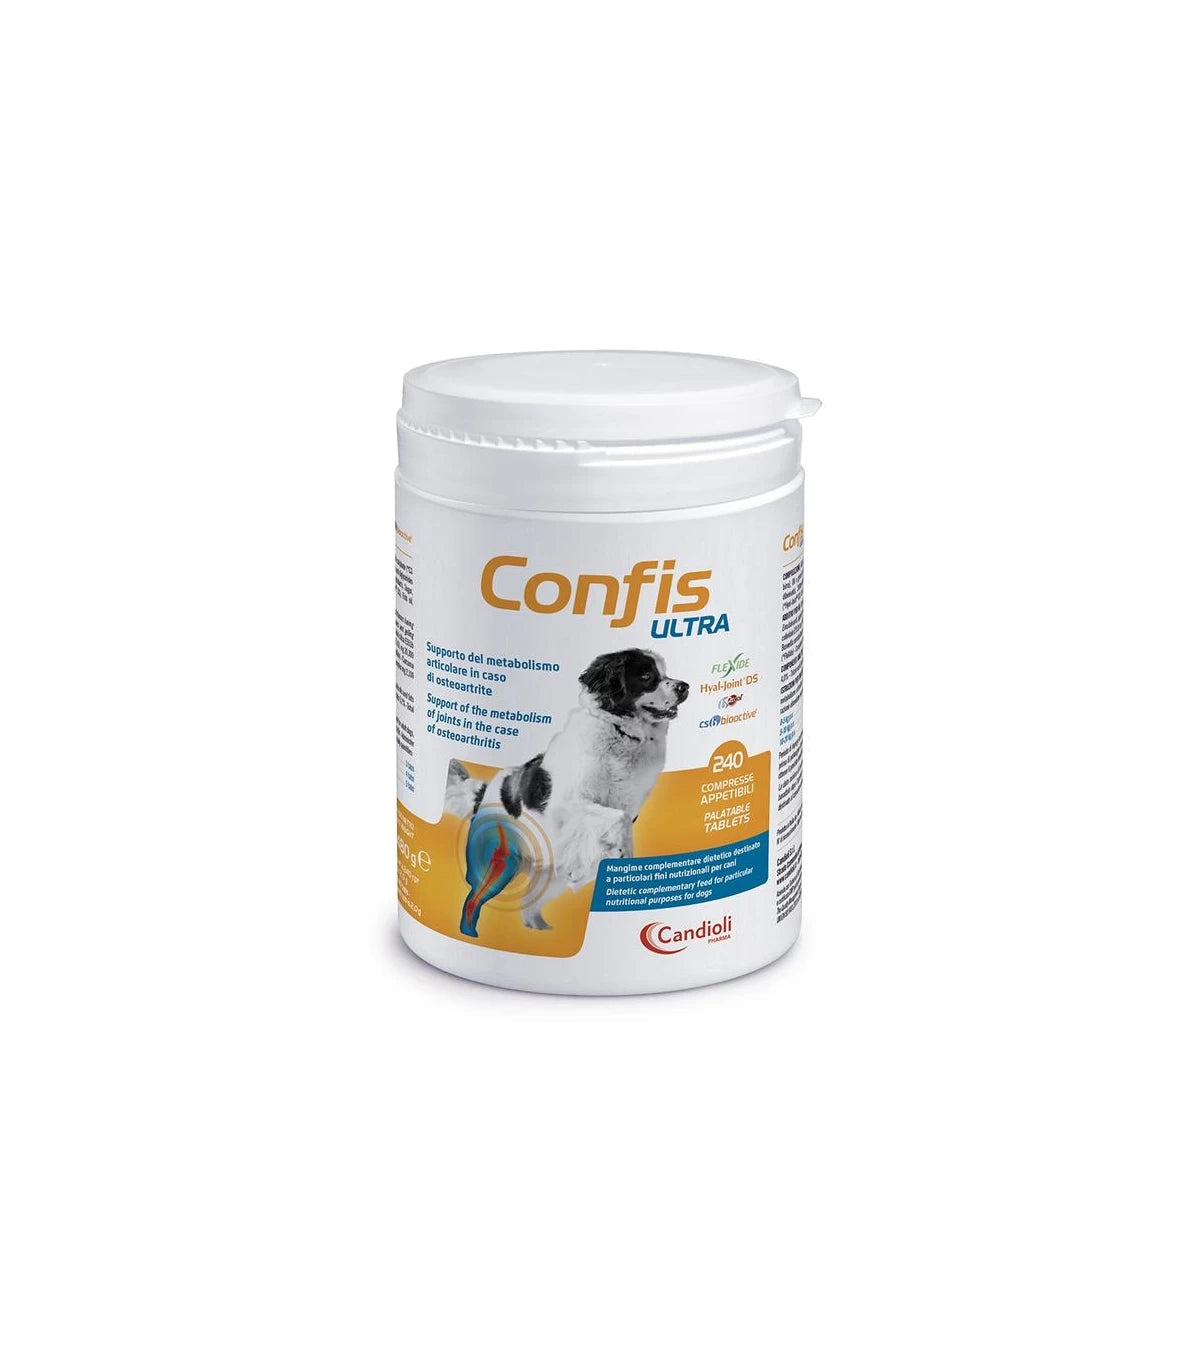 CONFIS ULTRA (240 cpr) – Per il trattamento dell’osteartrite articolare